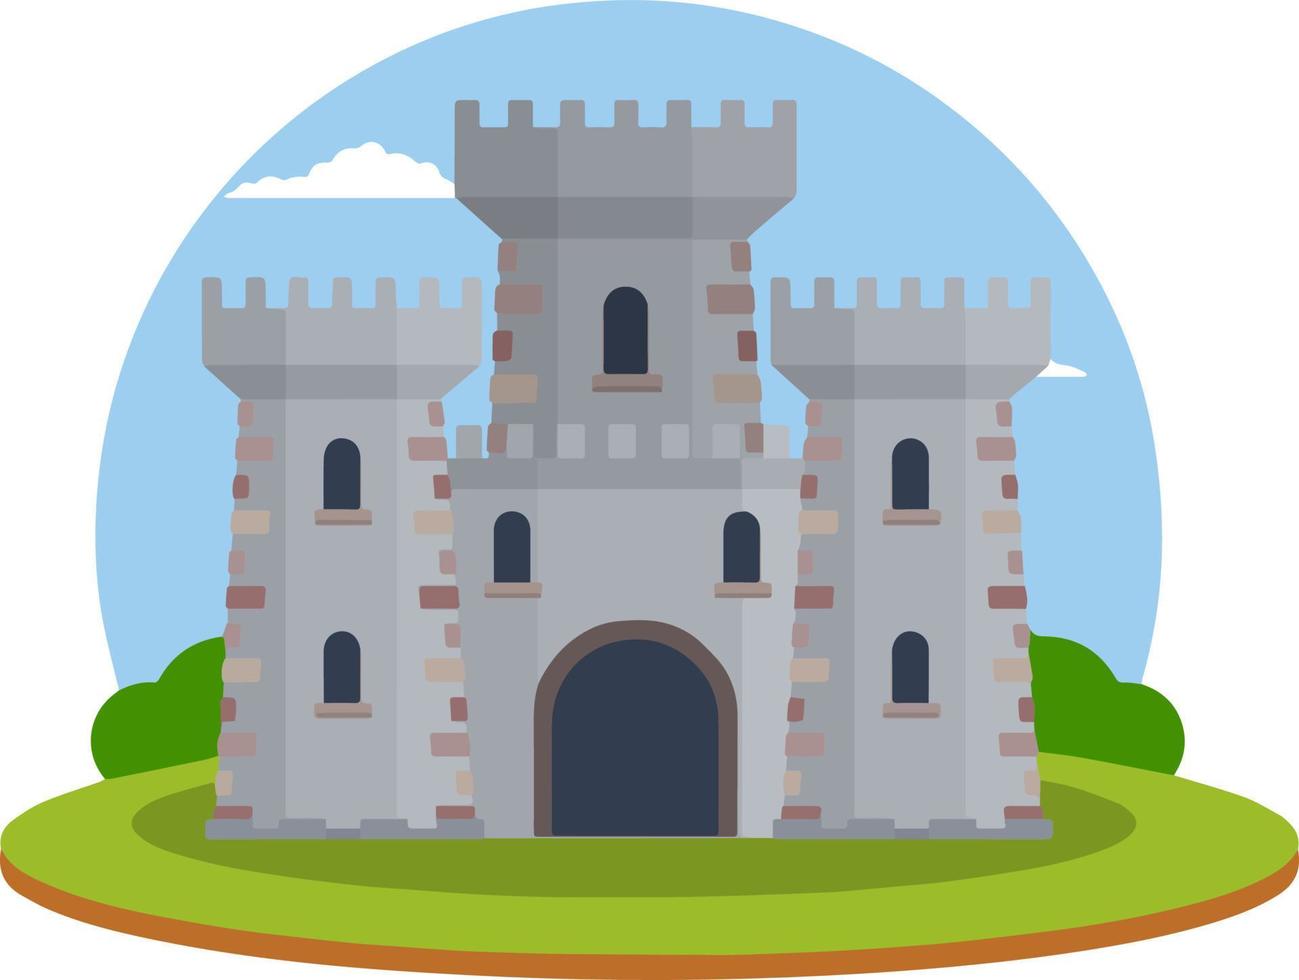 middeleeuws europees stenen kasteel. ridder fort. concept van veiligheid, bescherming en defensie. cartoon vlakke afbeelding. militair gebouw met muren, poorten en grote toren. vector